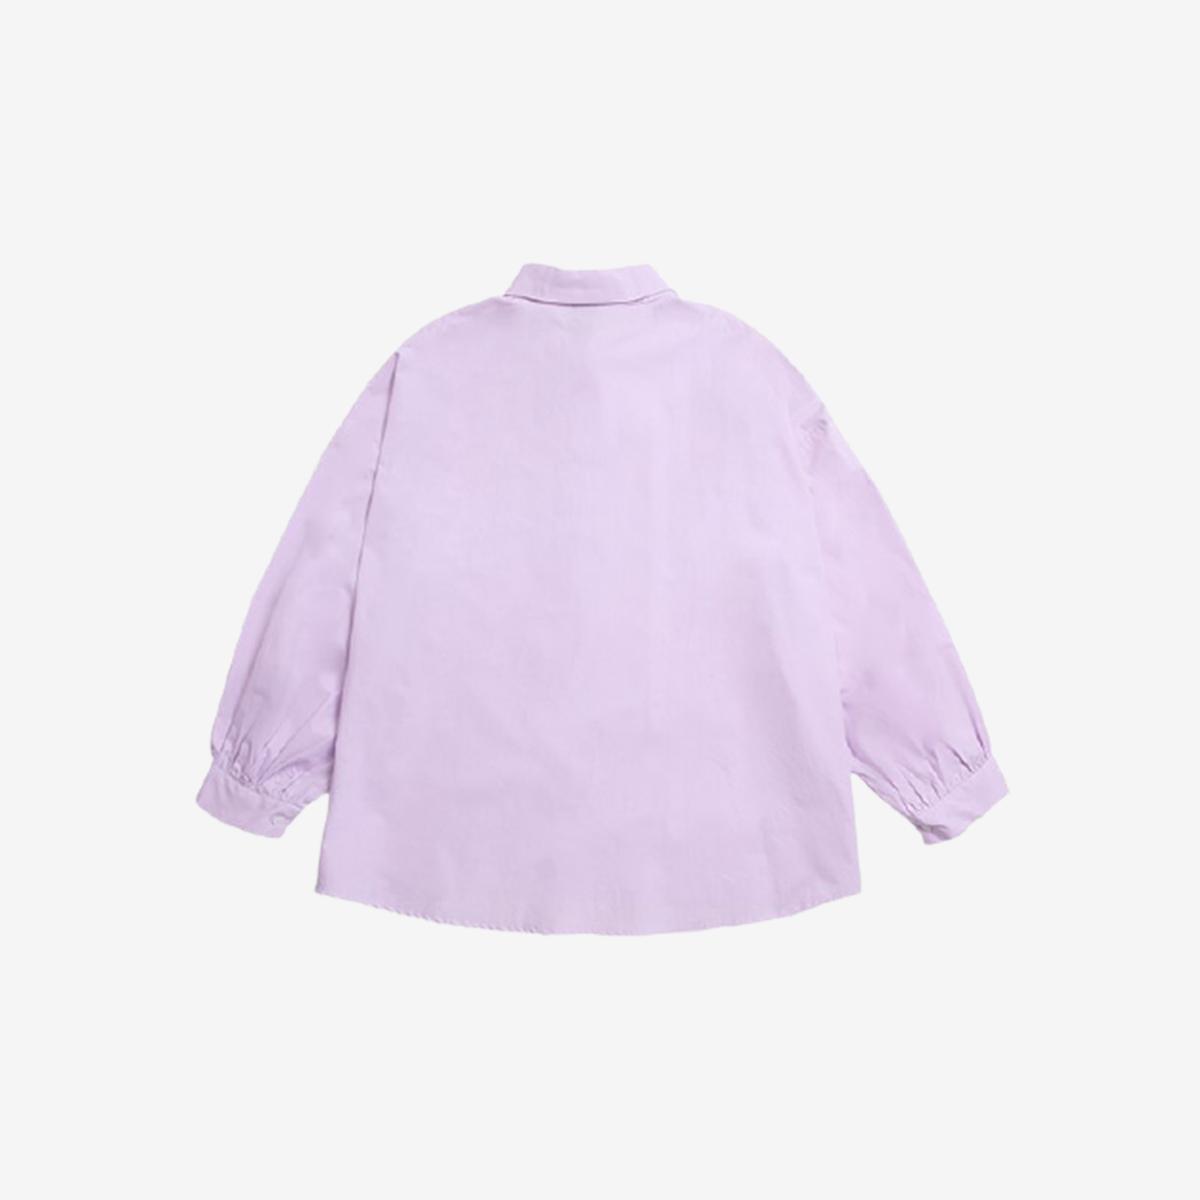 標籤LOGO寬鬆襯衫（紫色）